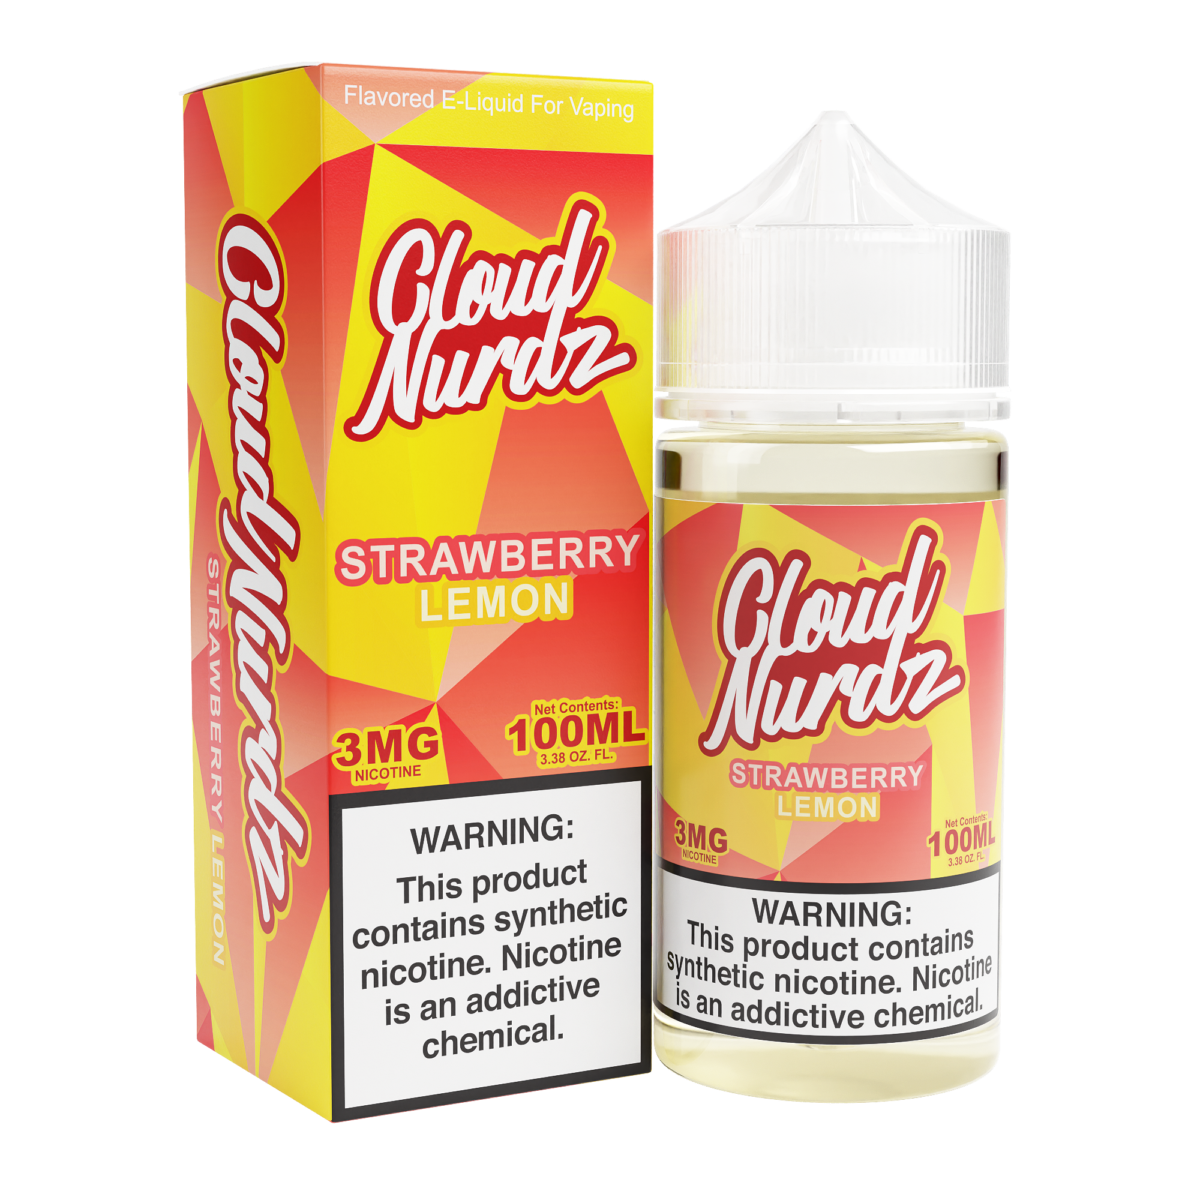 Strawberry Lemon by Cloud Nurdz Series 100mL with Packaging